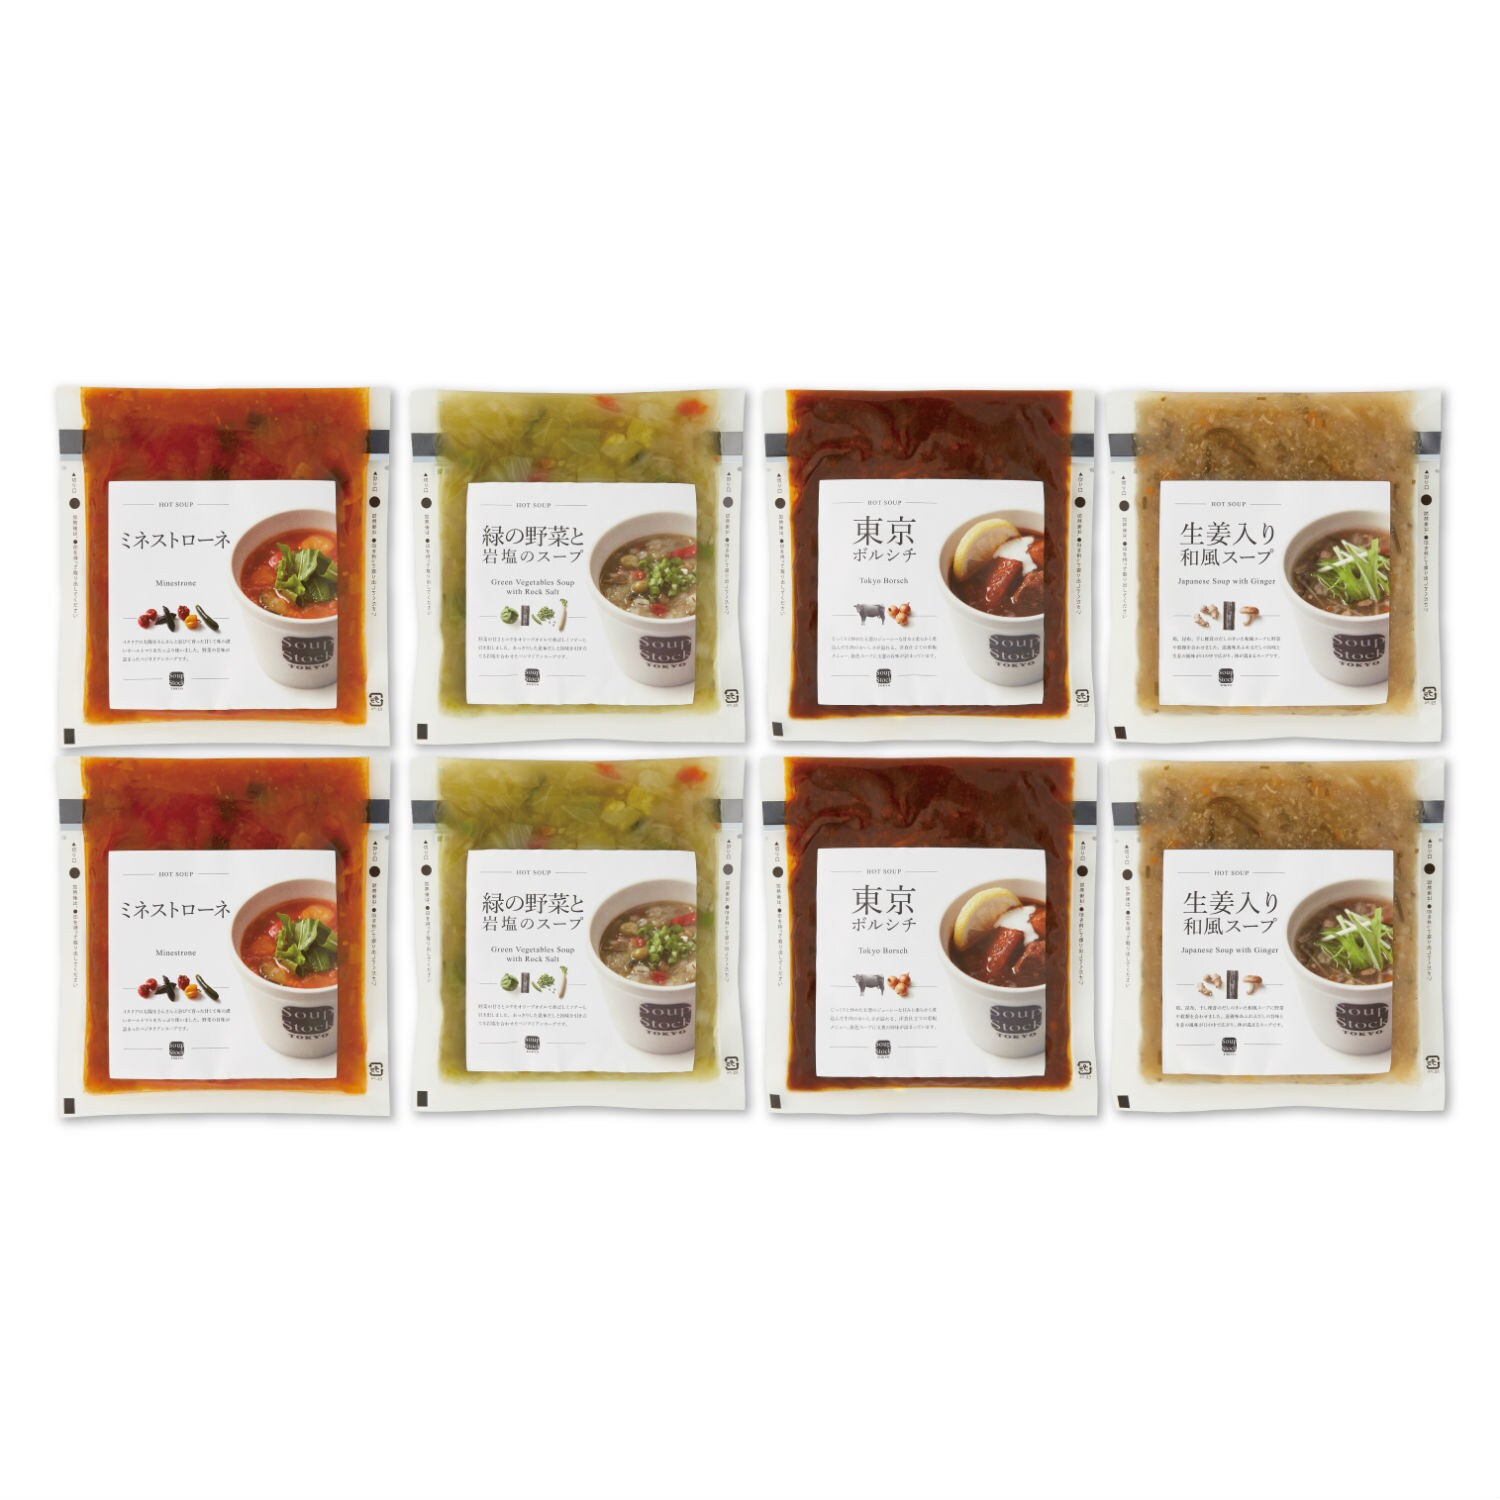 【Soup Stock Tokyo】スープストックトーキョー ４種の野菜スープ詰合せ - 出産おめでとう,-